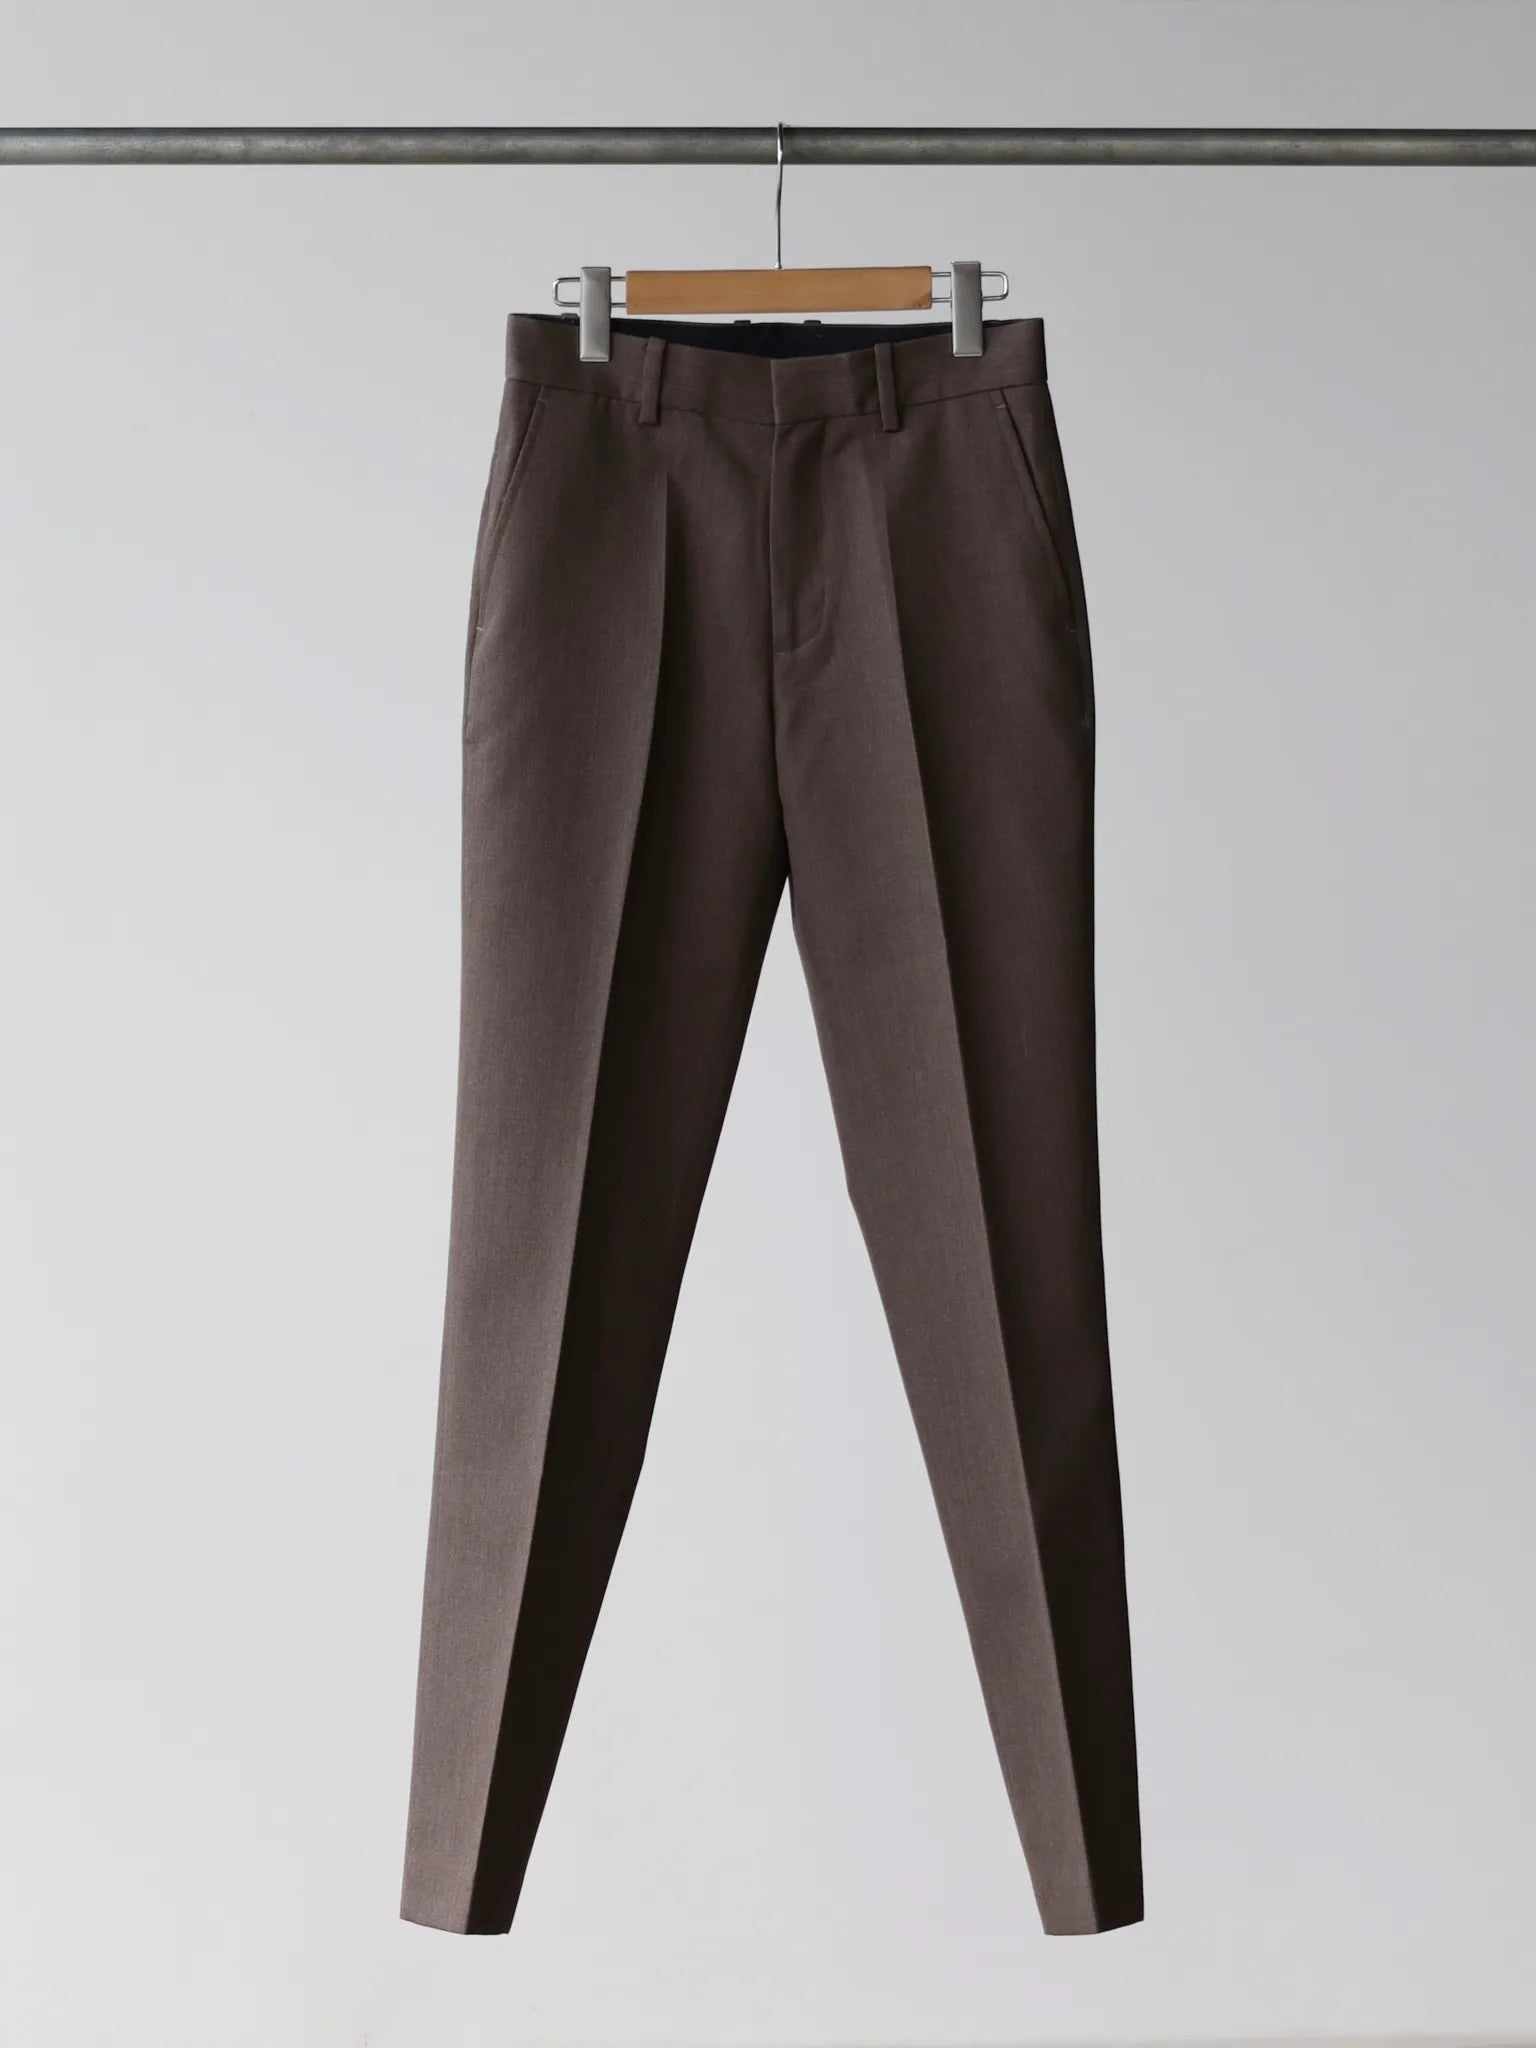 sean-suen-trousers-brown-1